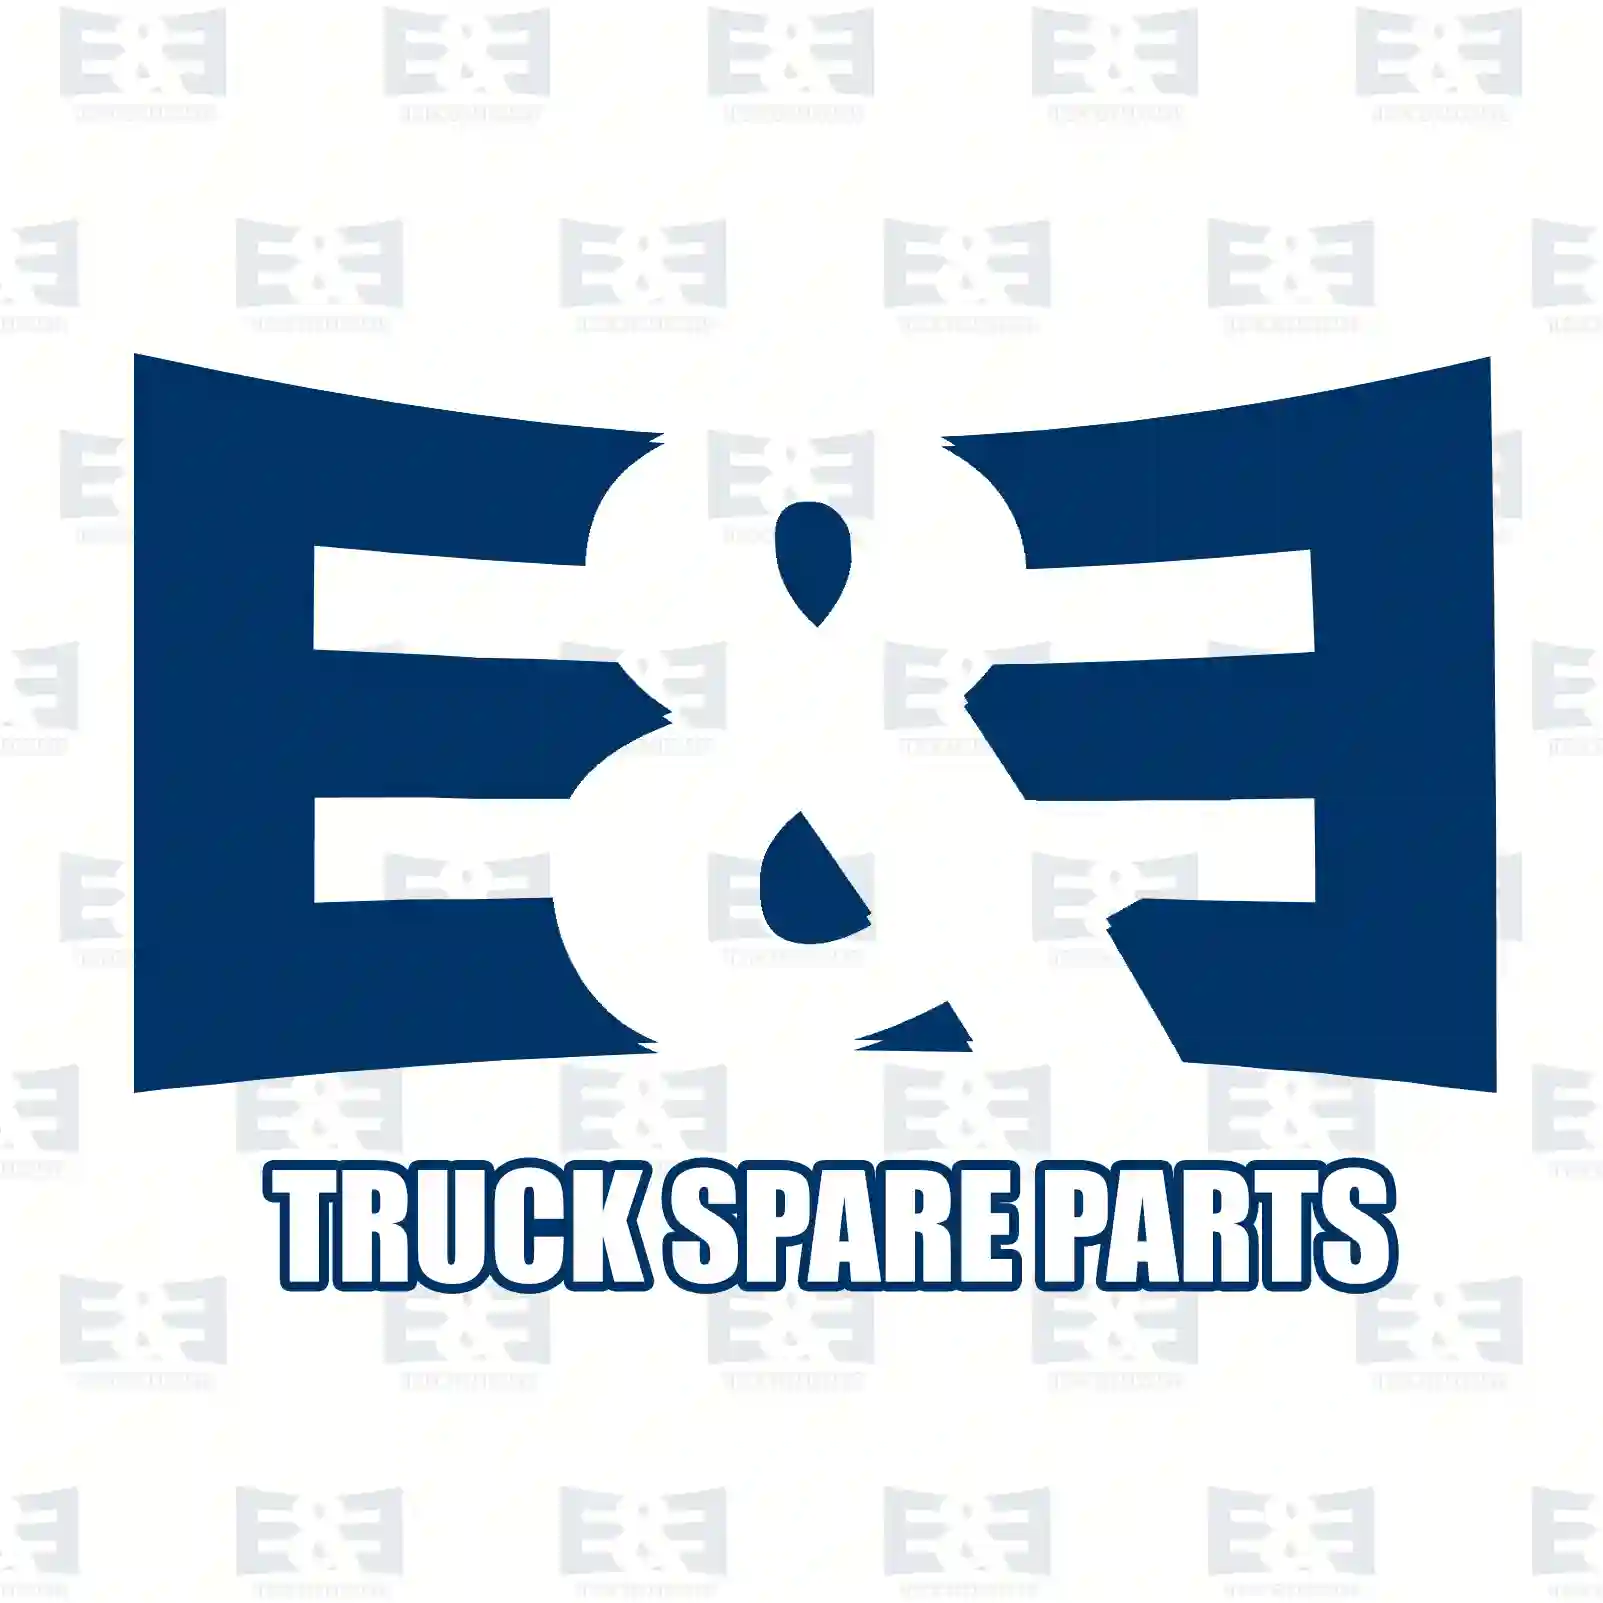 Wiper linkage, 2E2280090, 1440030, 1441295, 1603688 ||  2E2280090 E&E Truck Spare Parts | Truck Spare Parts, Auotomotive Spare Parts Wiper linkage, 2E2280090, 1440030, 1441295, 1603688 ||  2E2280090 E&E Truck Spare Parts | Truck Spare Parts, Auotomotive Spare Parts